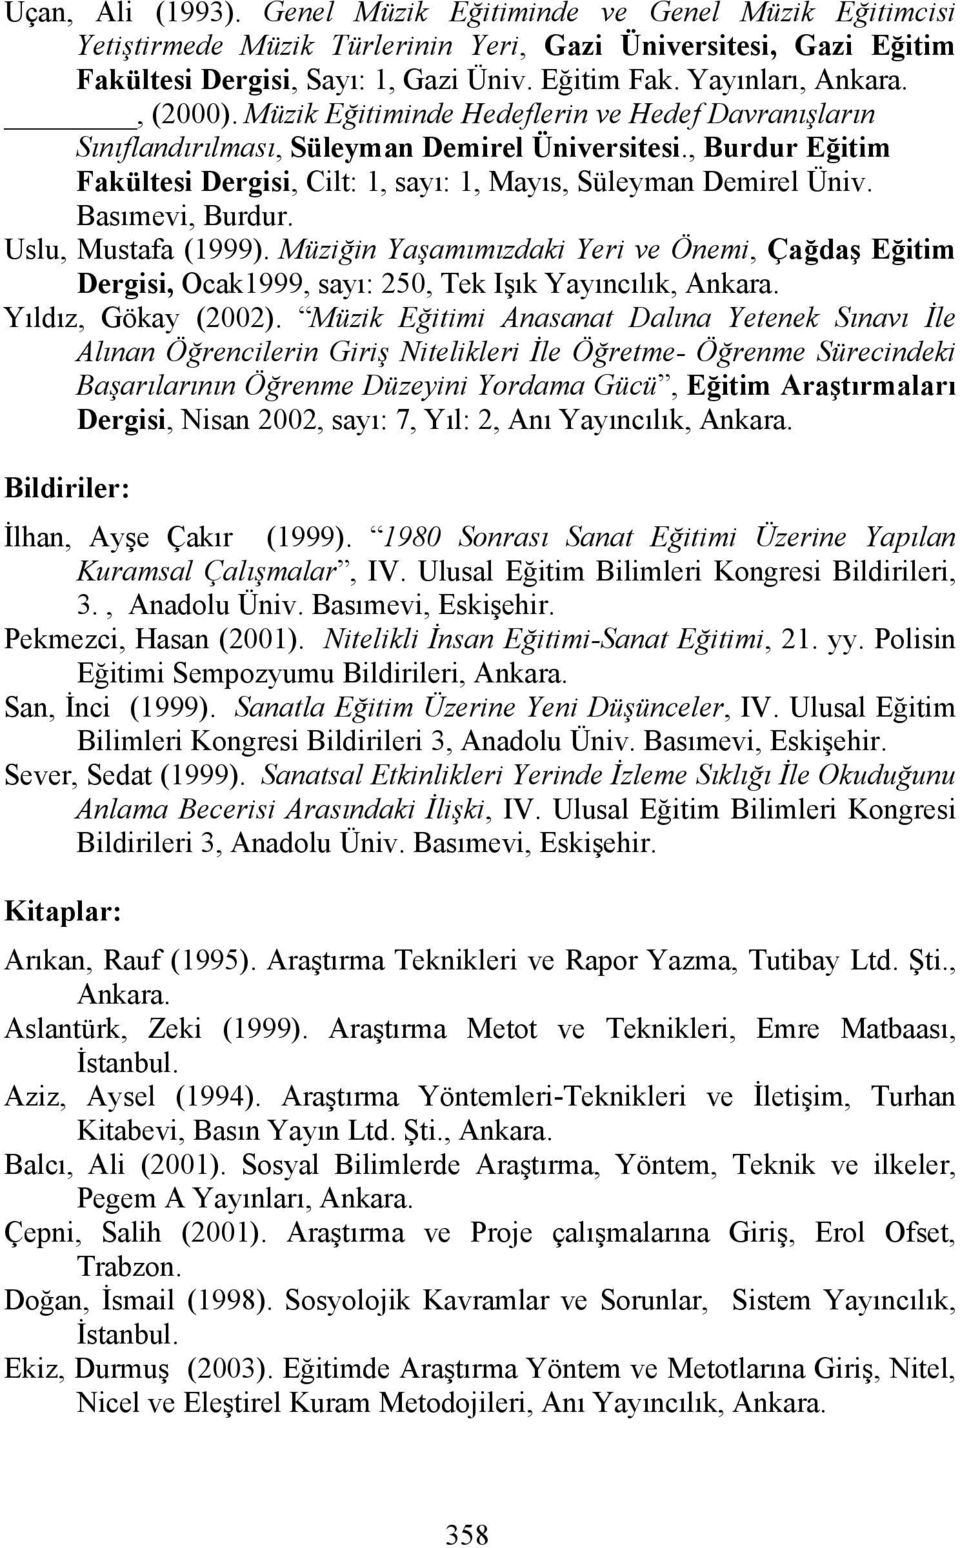 Basımevi, Burdur. Uslu, Mustafa (1999). Müziğin Yaşamımızdaki Yeri ve Önemi, Çağdaş Eğitim Dergisi, Ocak1999, sayı: 250, Tek Işık Yayıncılık, Ankara. Yıldız, Gökay (2002).